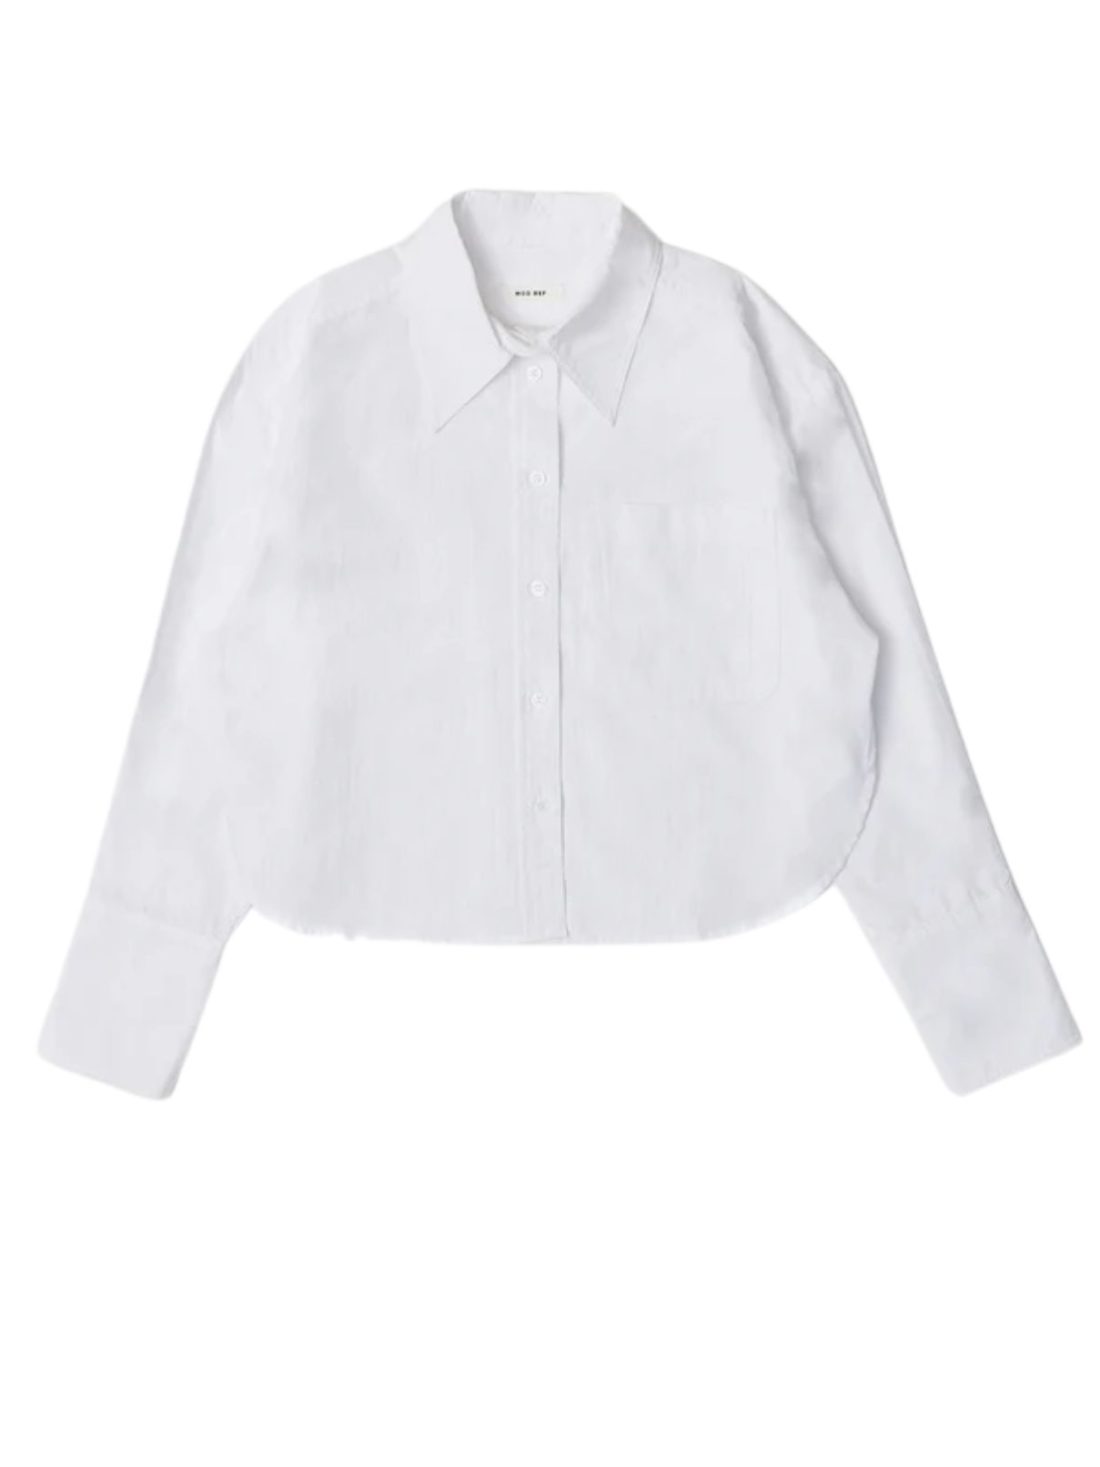 imogen poplin shirt in white